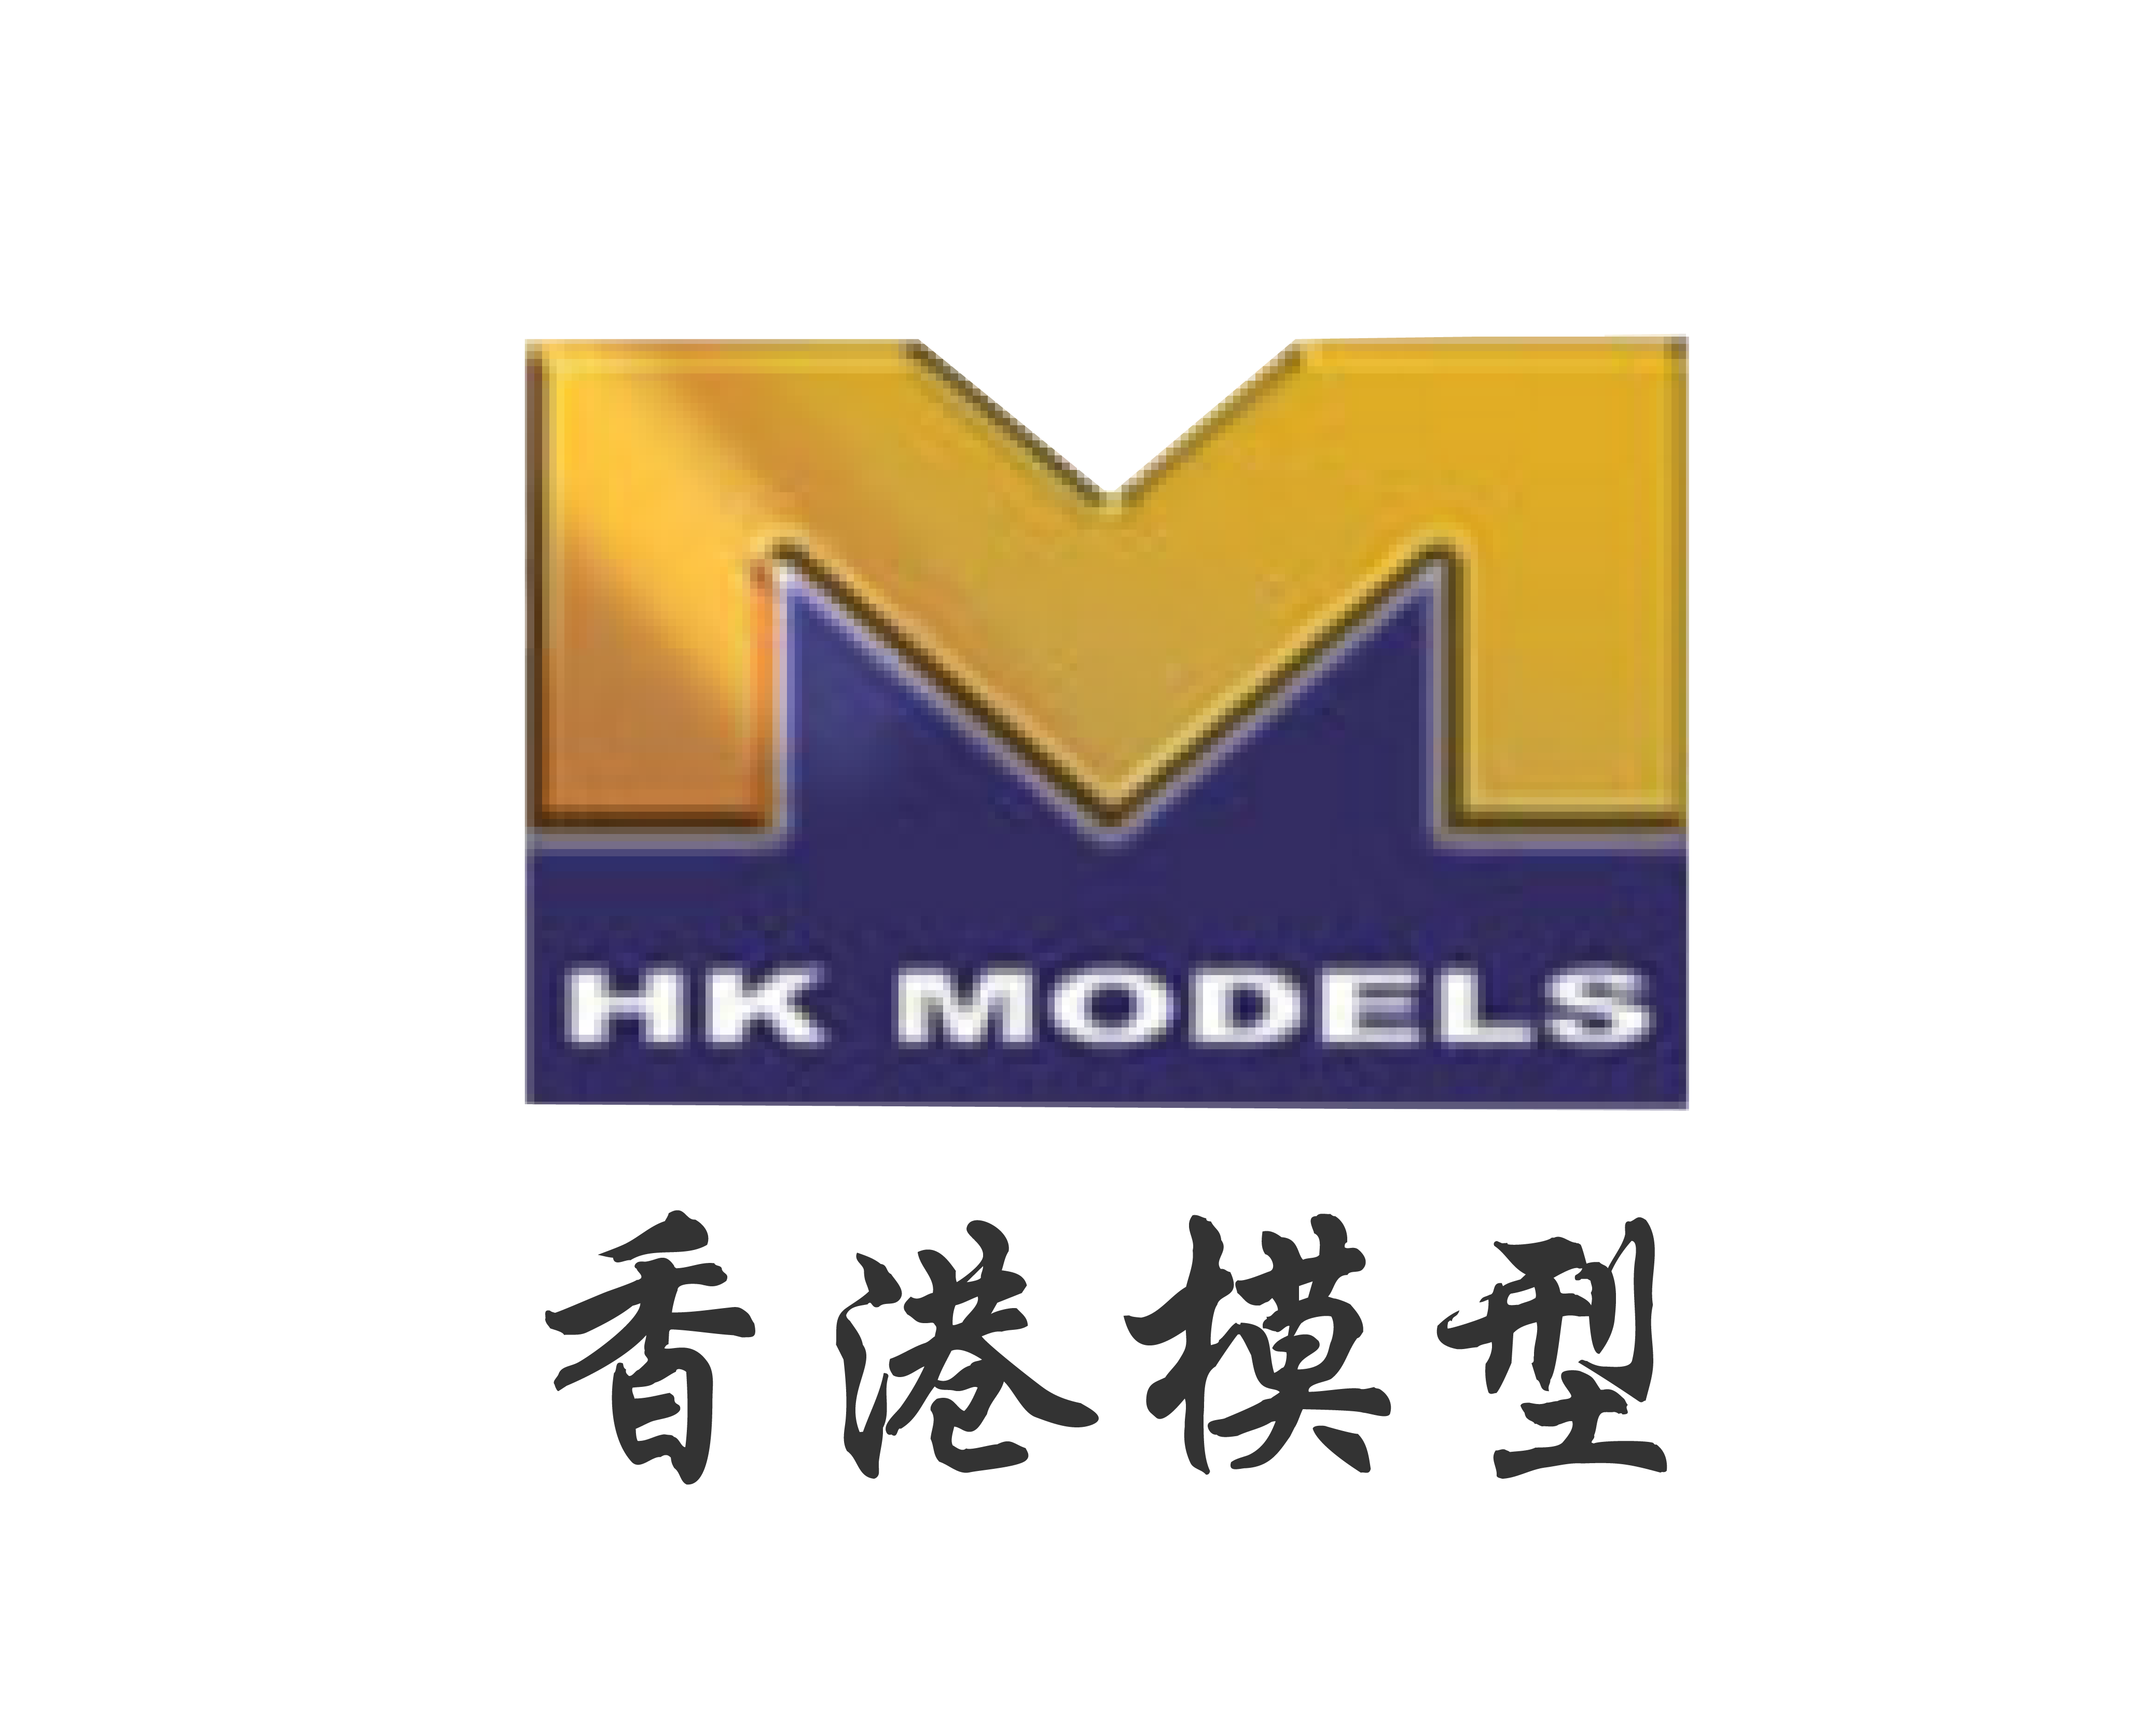 Hong Kong Models